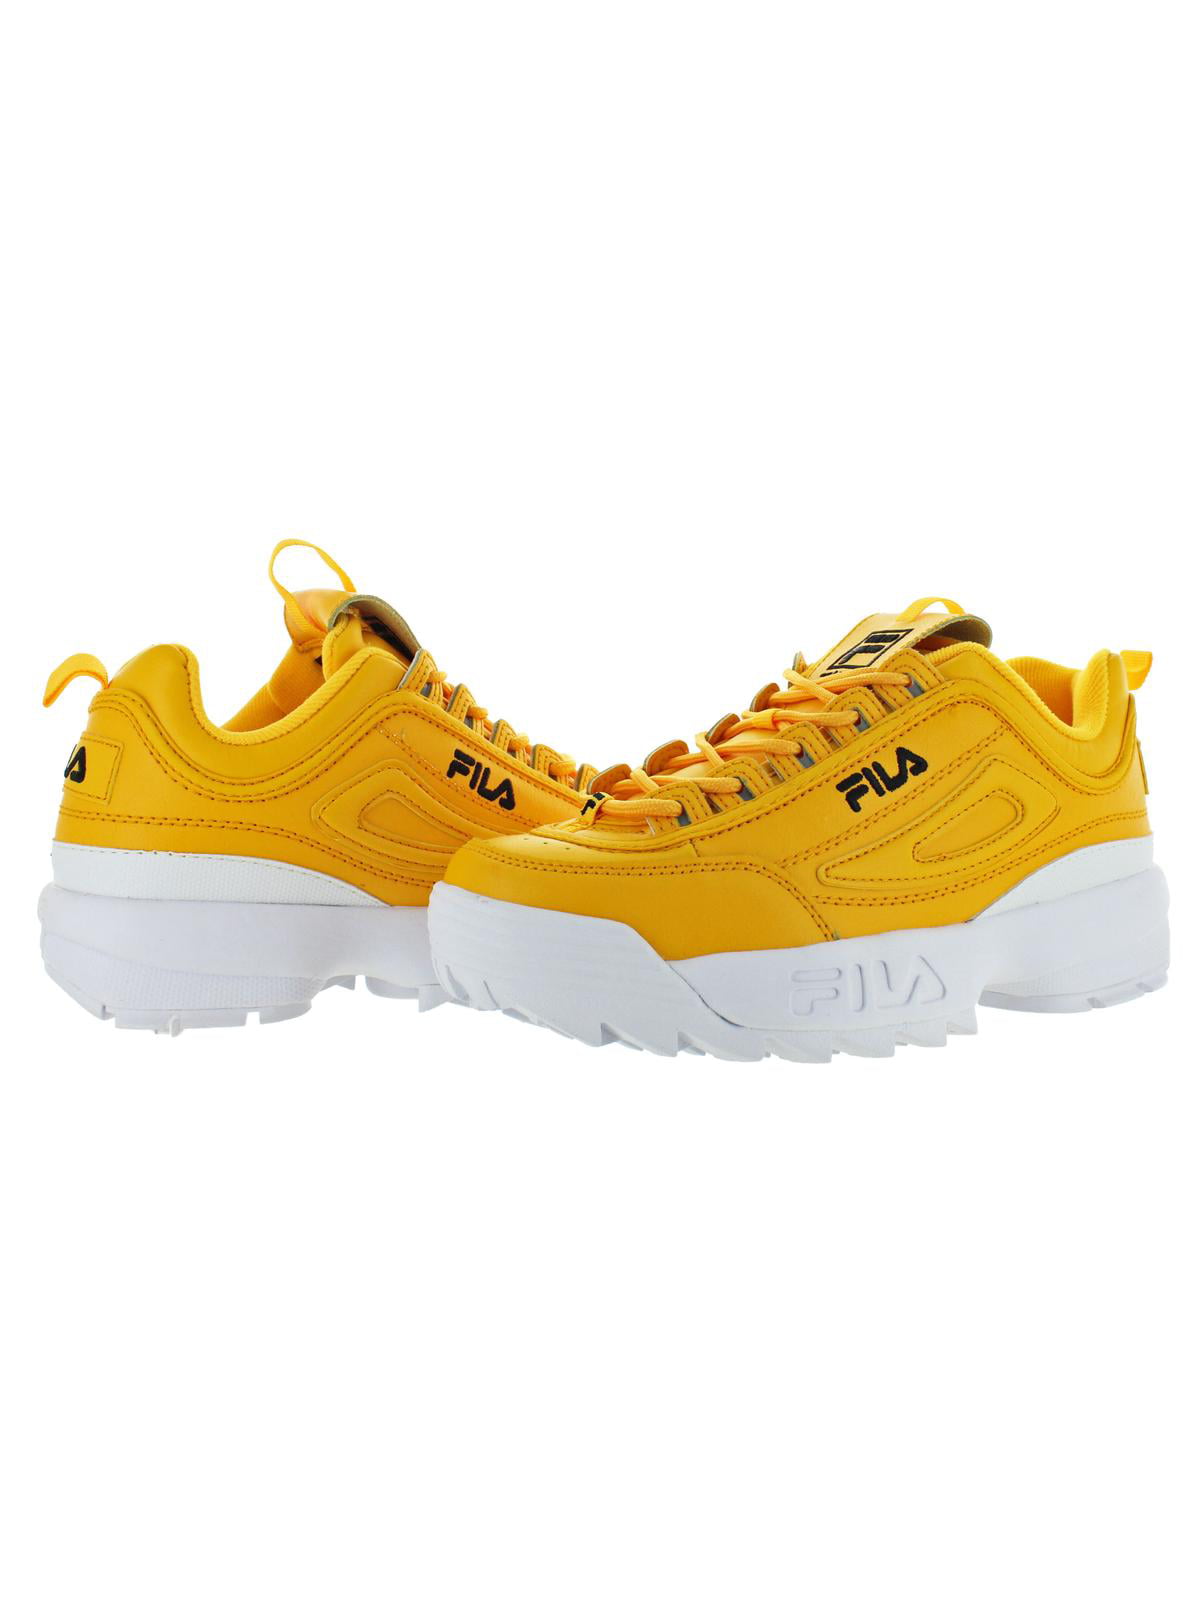 fila shoes womens yellow